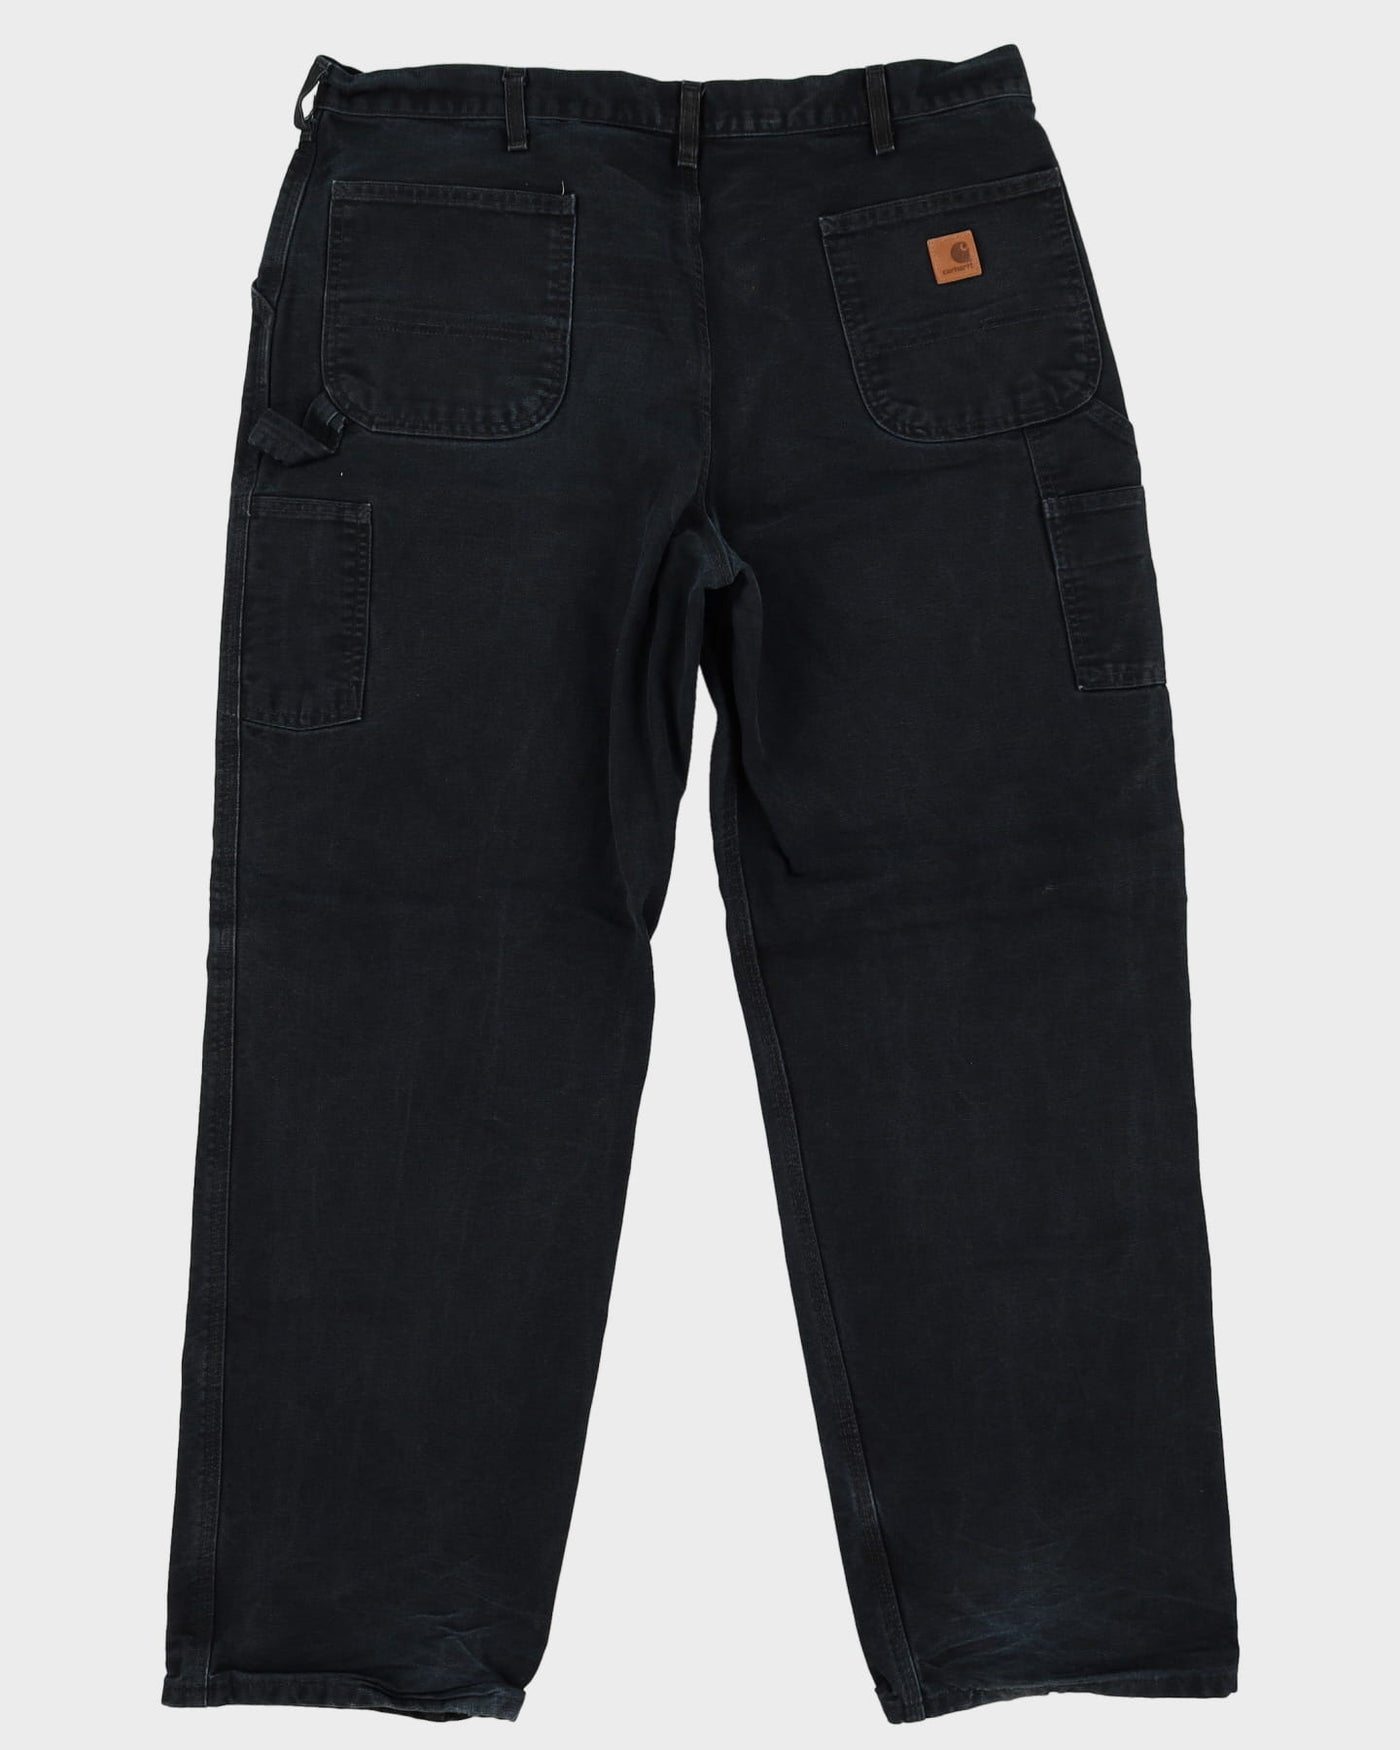 Carhartt Black Double Knee Workwear Jeans - W40 L31